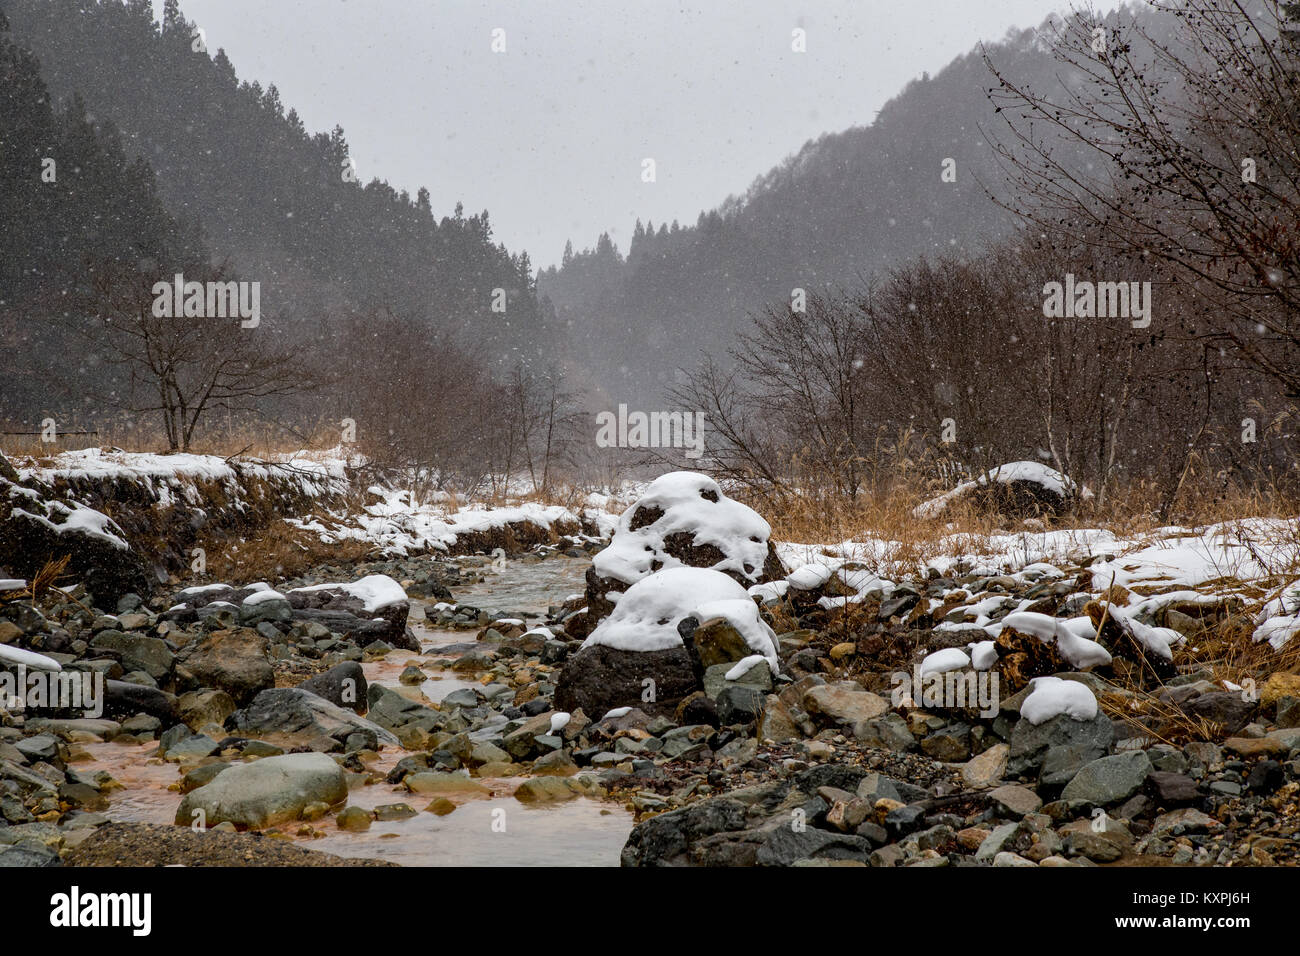 La Yokoku río fluye a través de las rocas. El río es alimentado por aguas termales en las montañas, por lo que permanece caliente incluso en el frío del invierno. Foto de stock